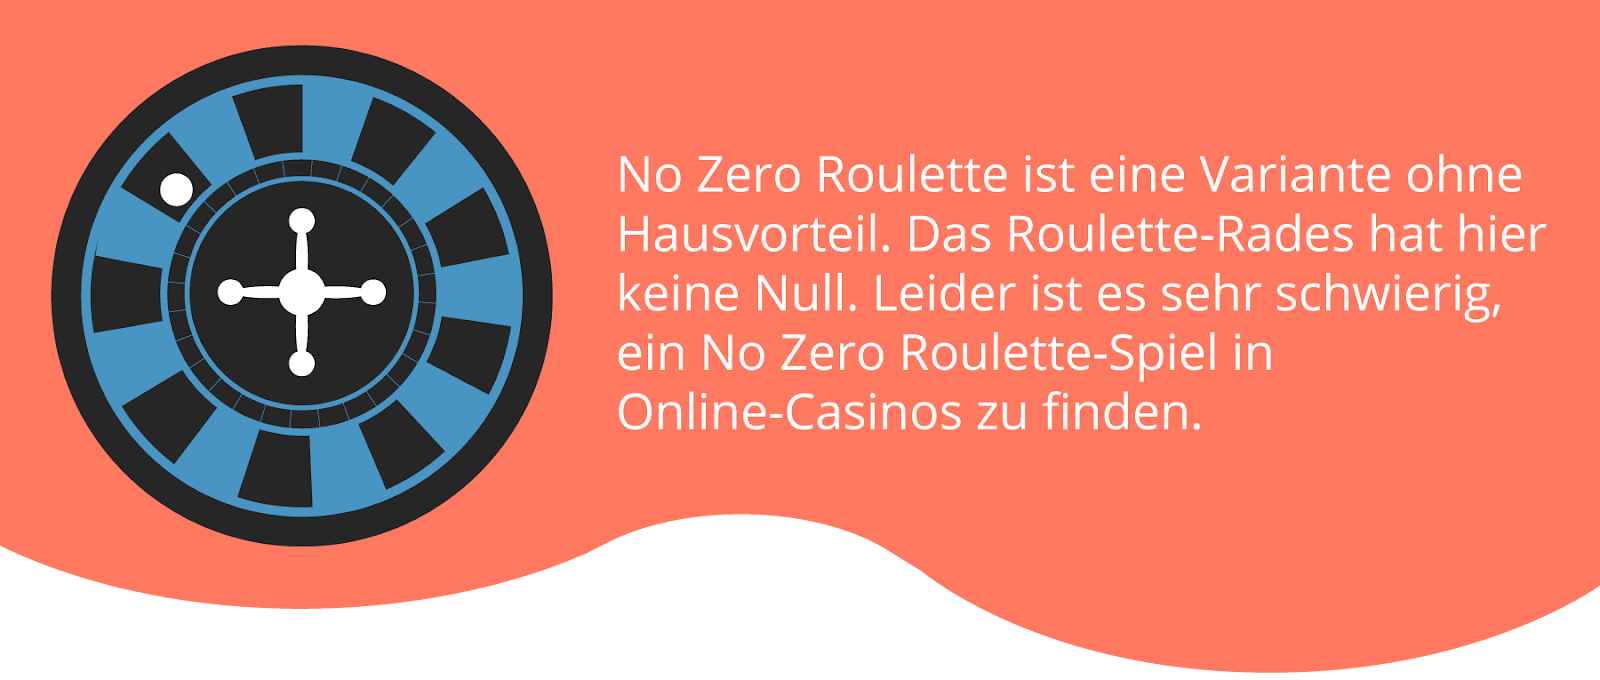 Die "No Zero Roulette" Variante